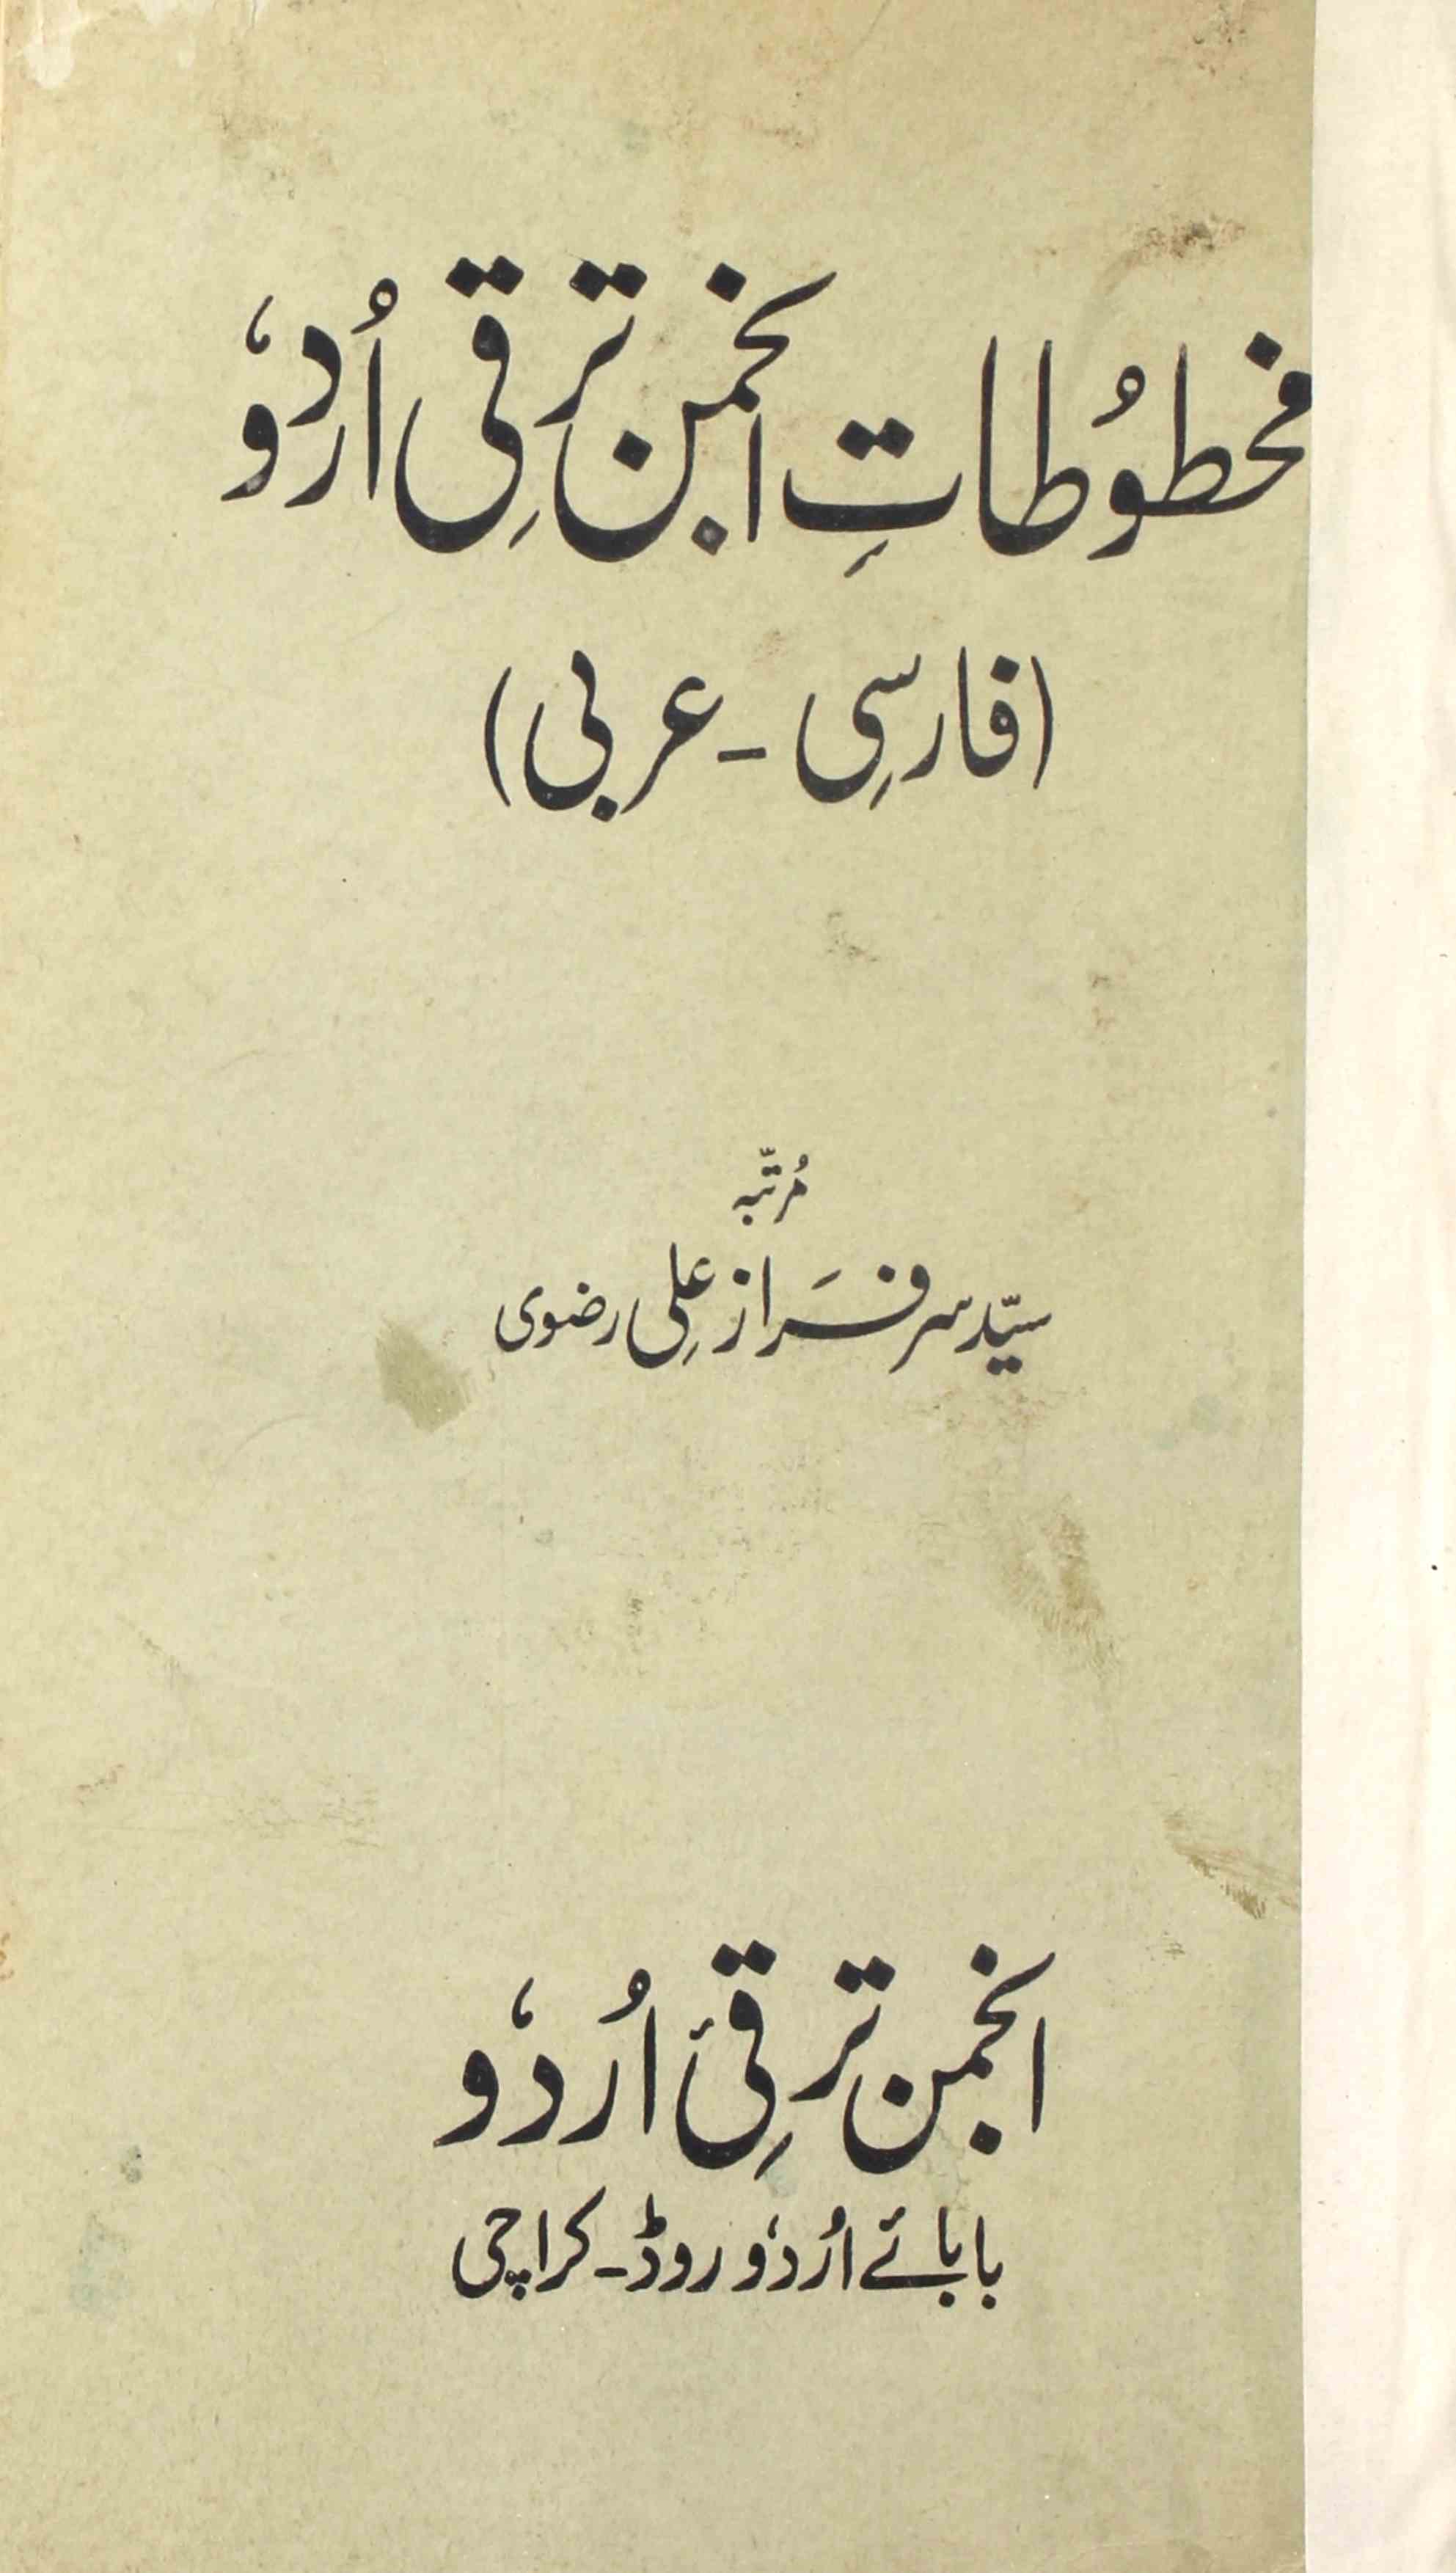 مخطوطات انجمن ترقی اردو